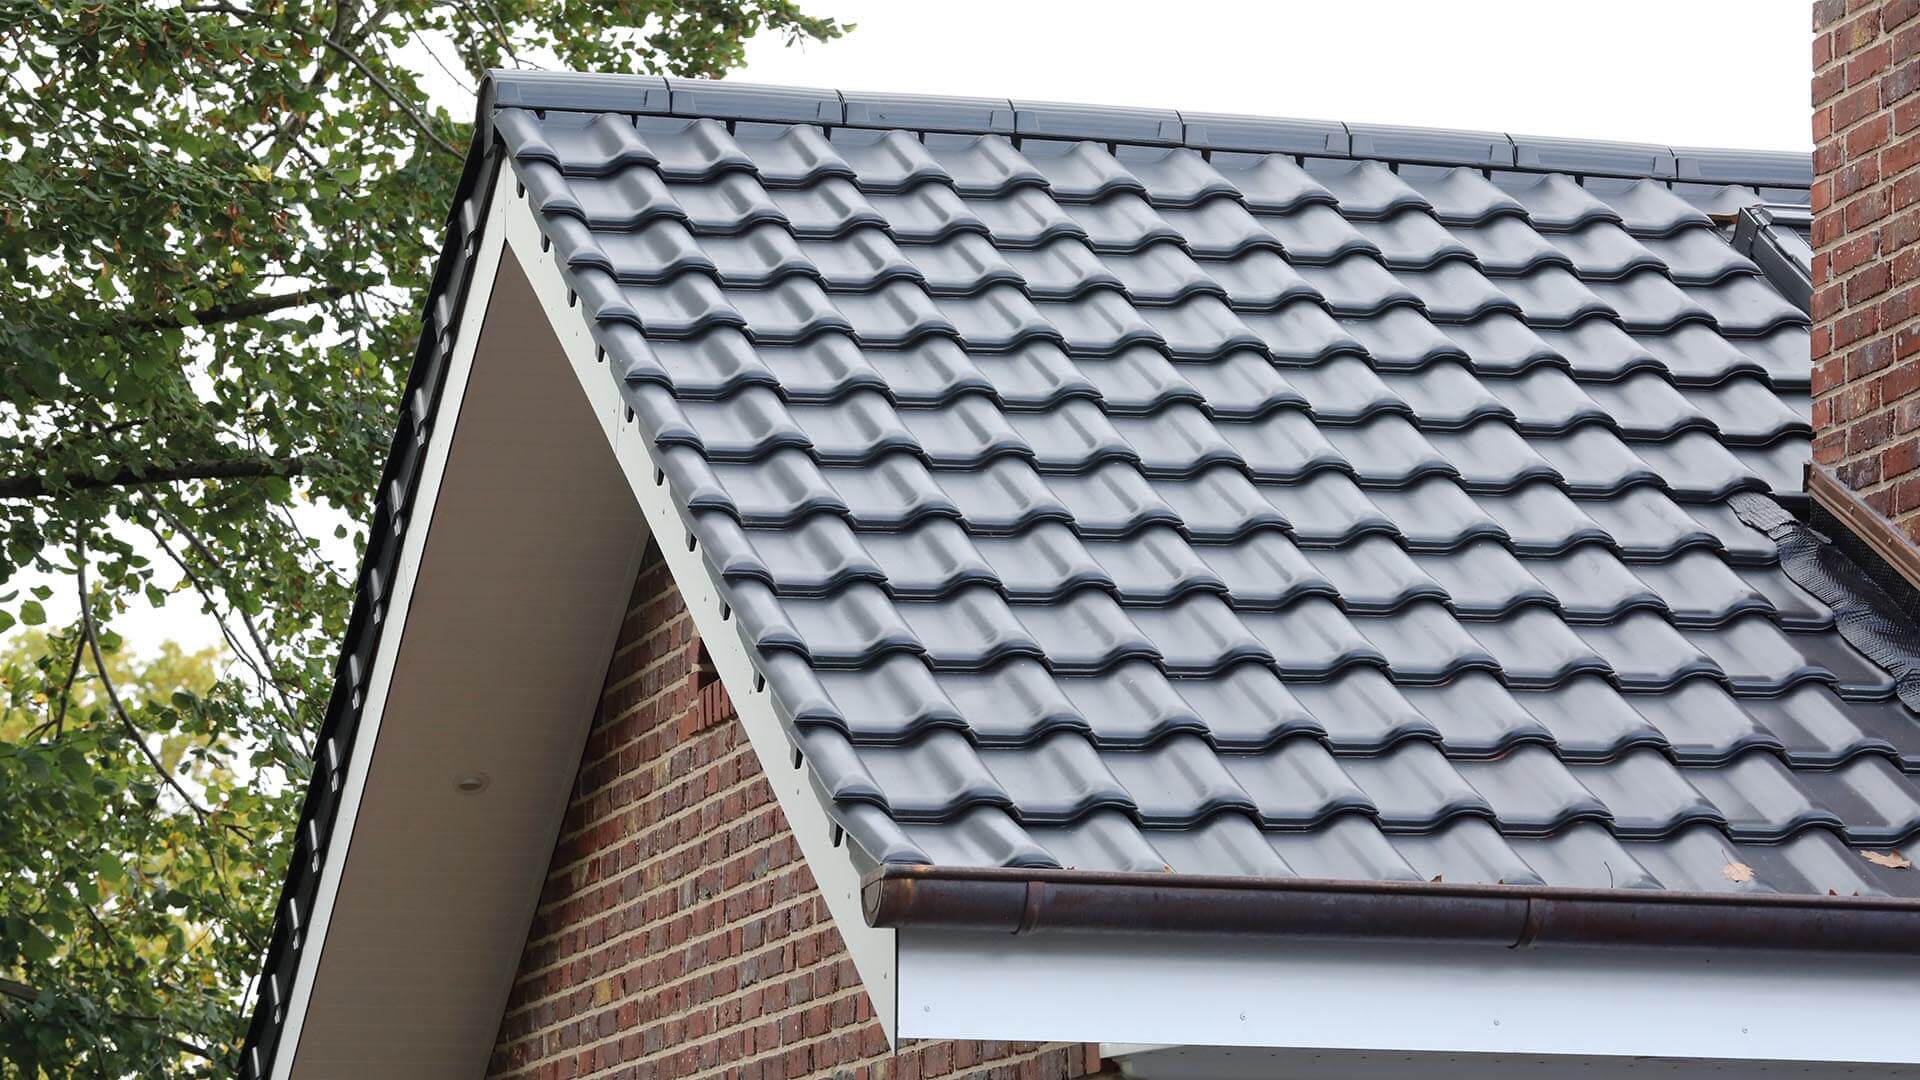 Roof tiles Creaton MZ3 268 x 442 mm Bestor Grupp